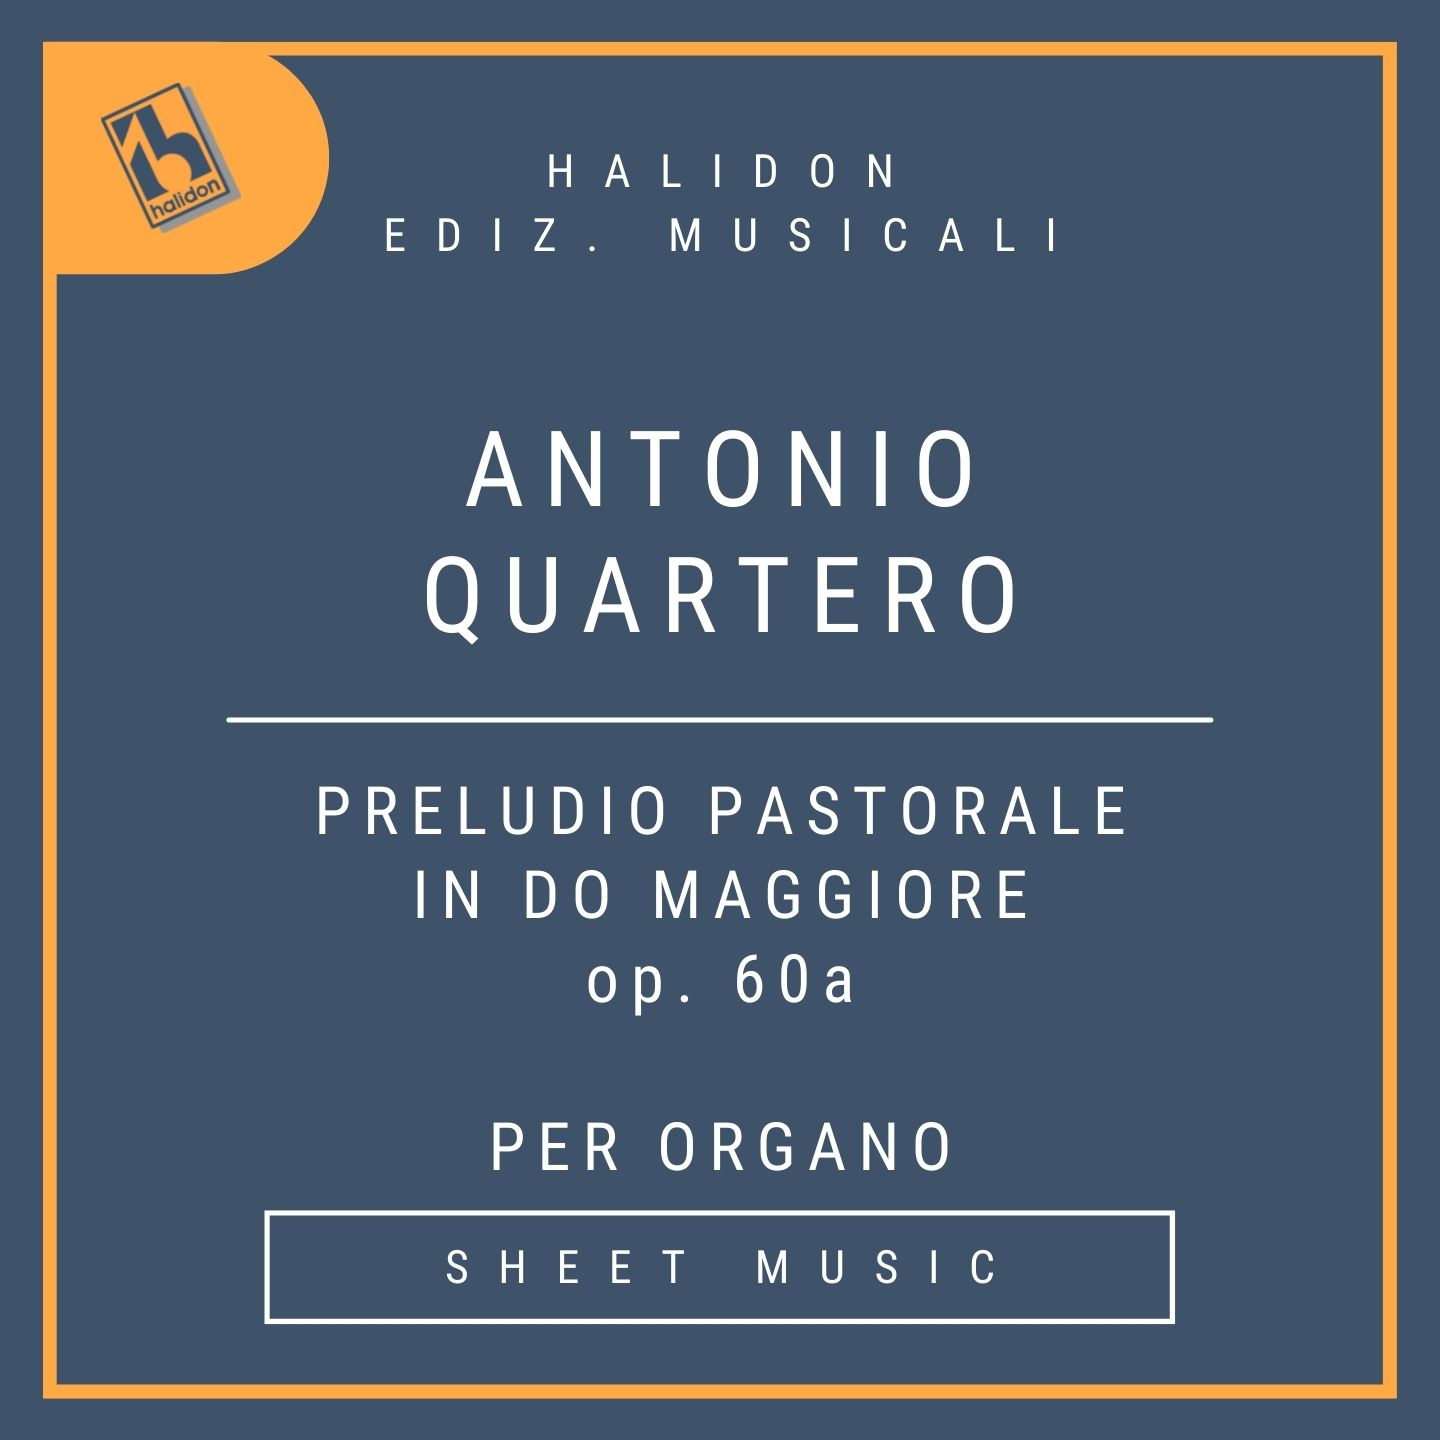 Antonio Quartero - Preludio Pastorale in Do maggiore Op. 60a